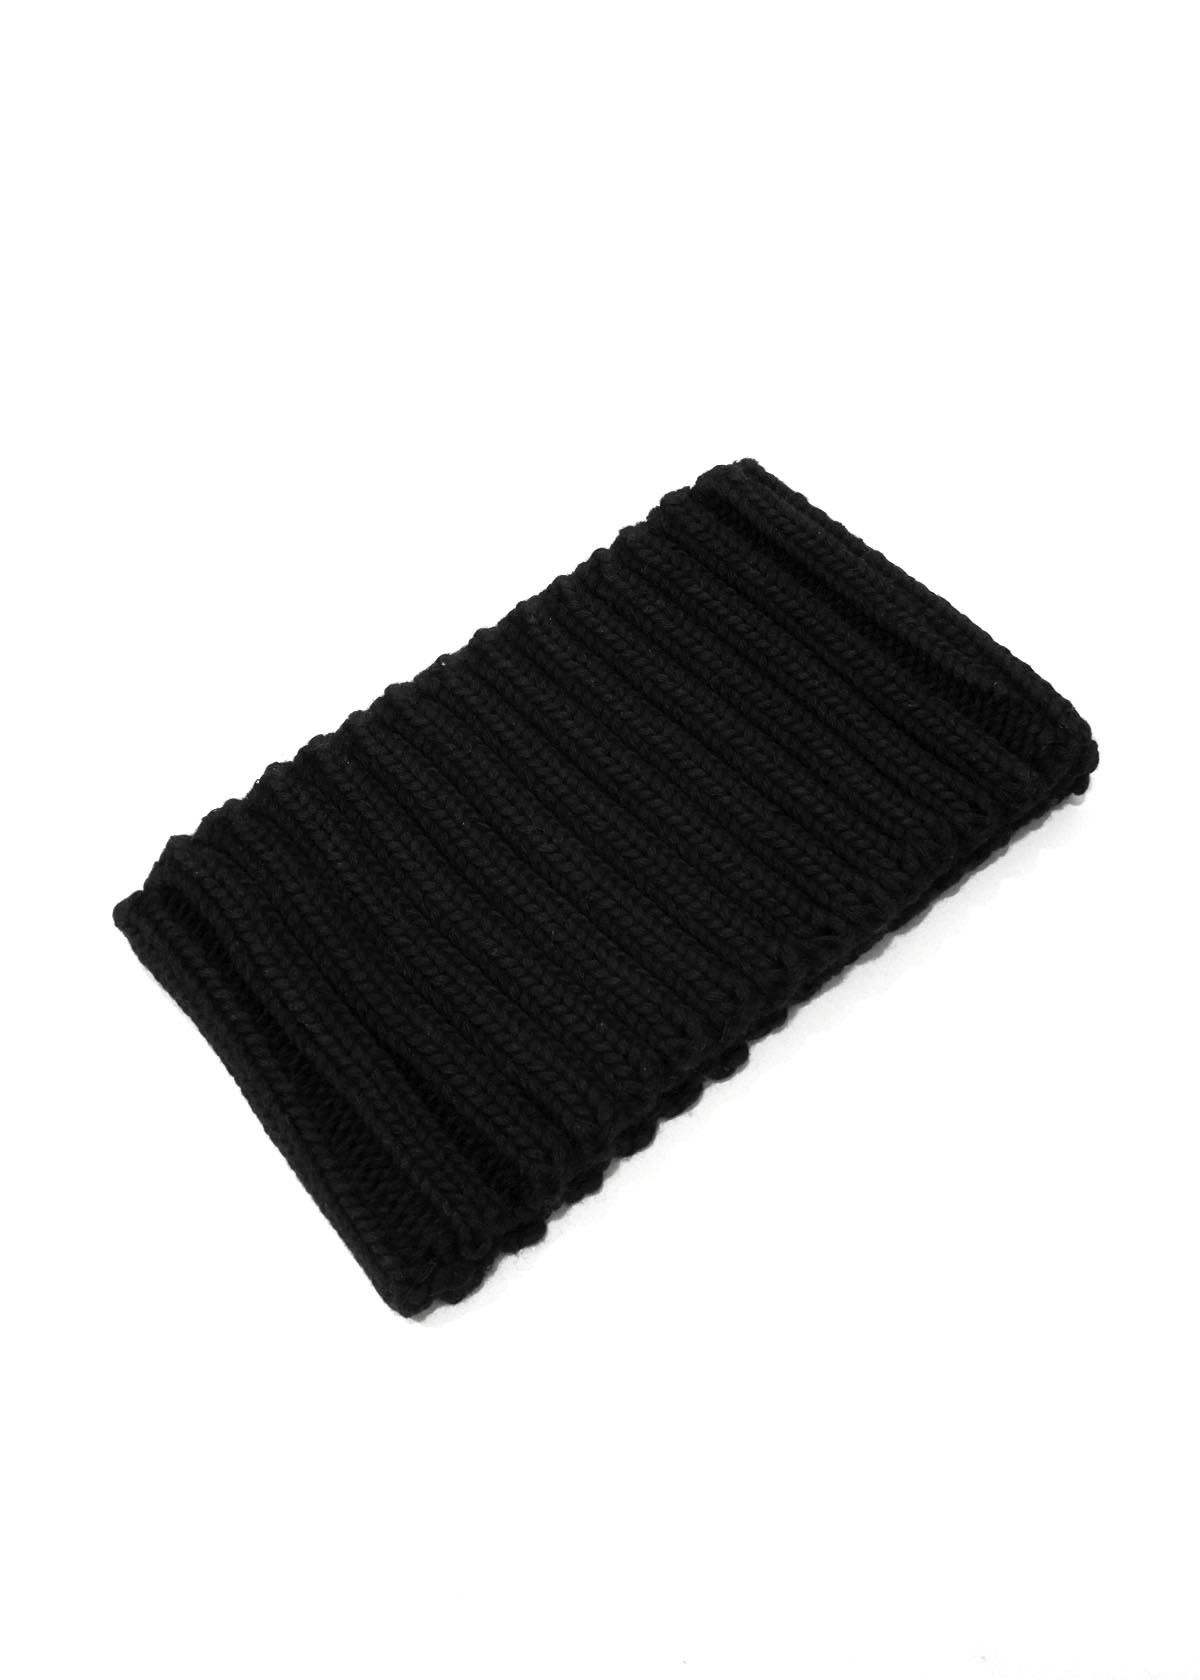 [60% SALE] Black Knit Headband